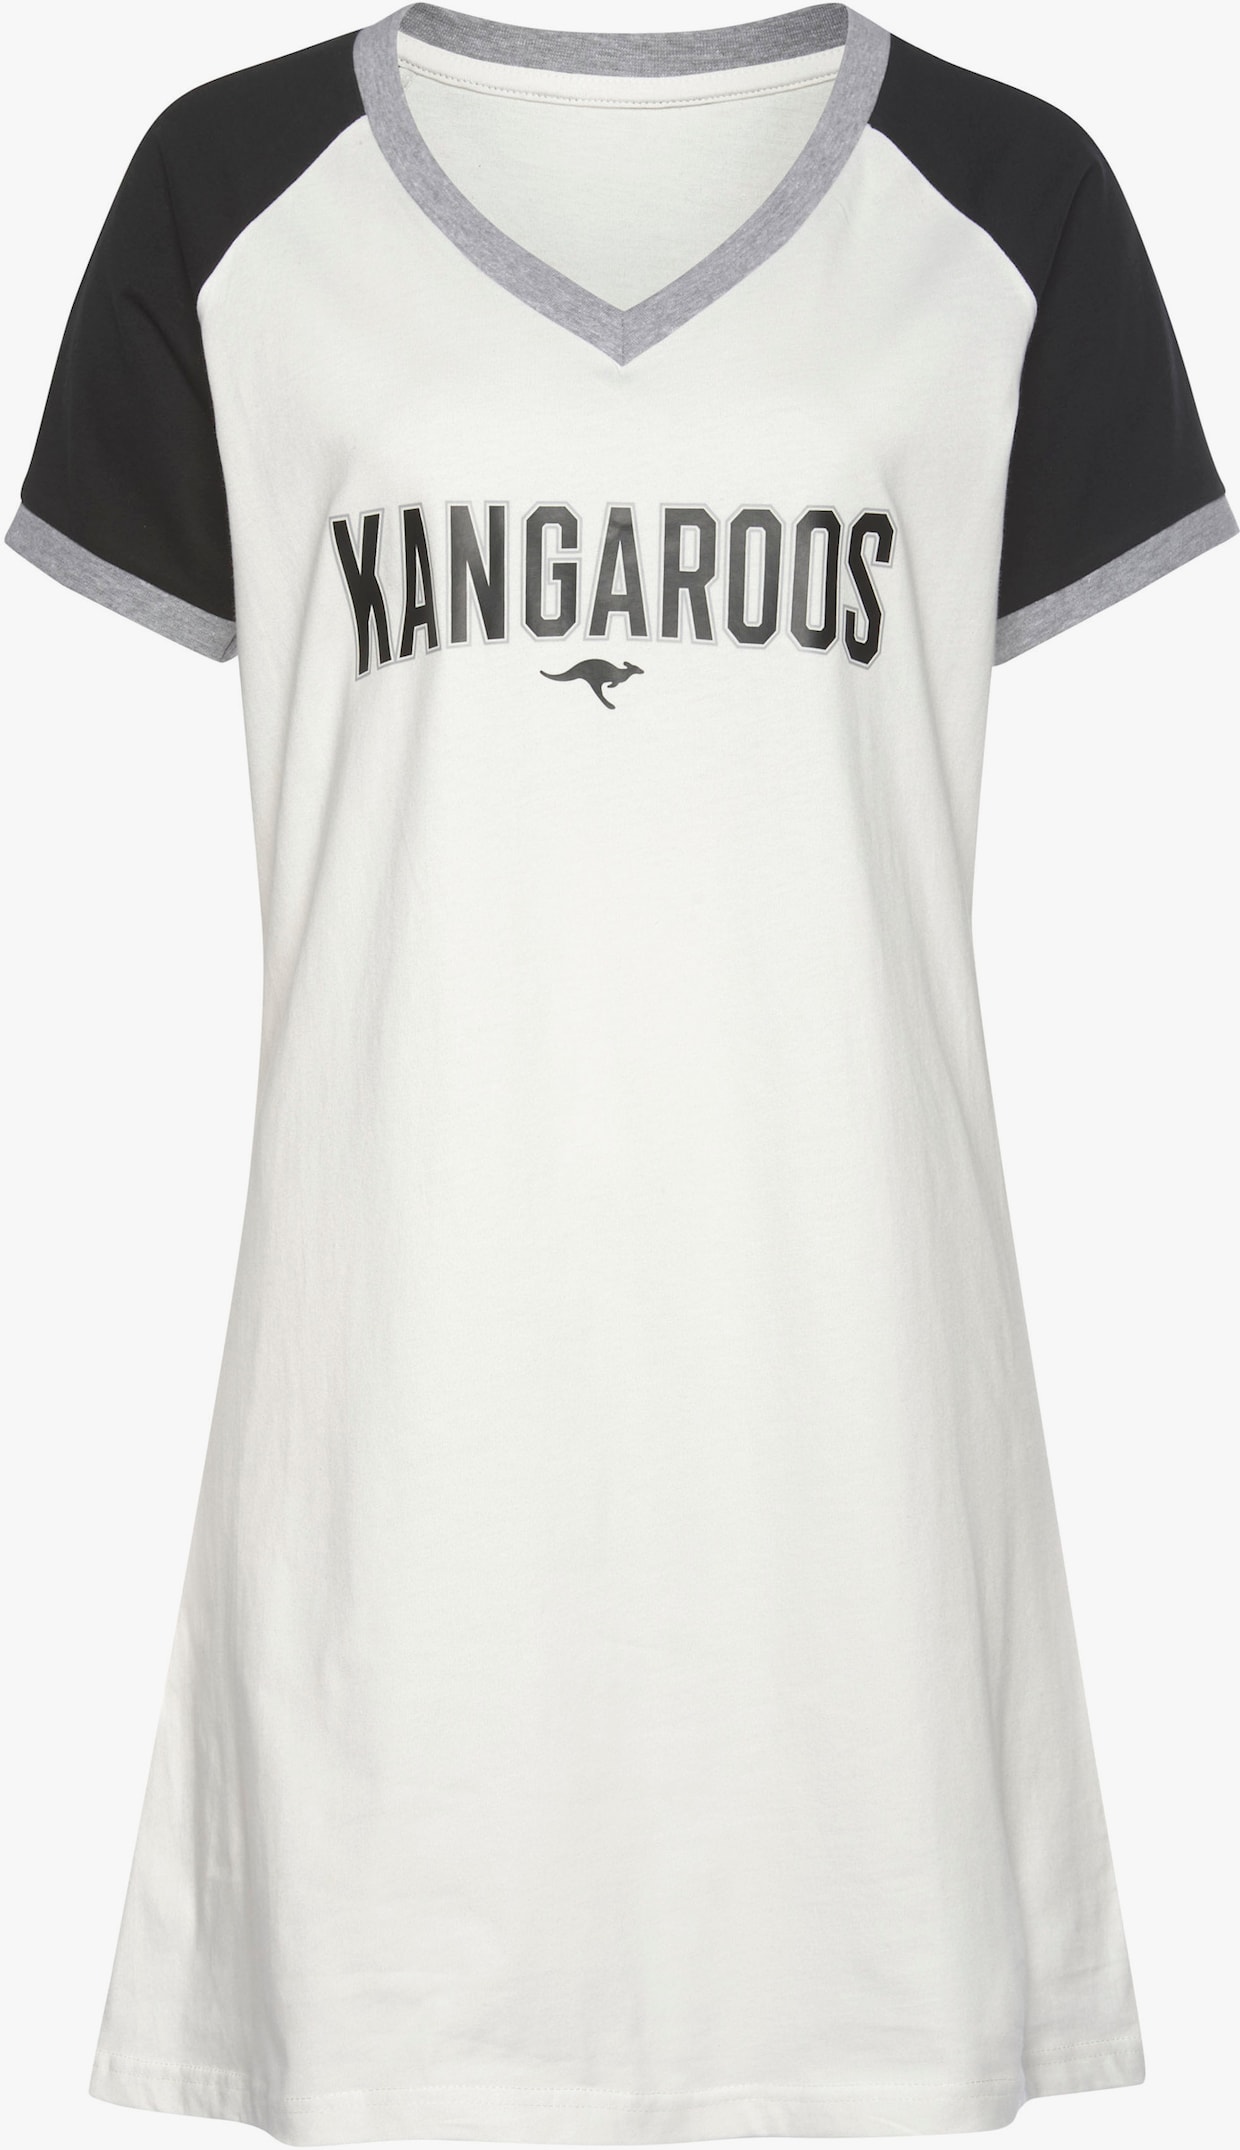 KangaROOS Bigshirt - zwart/wit